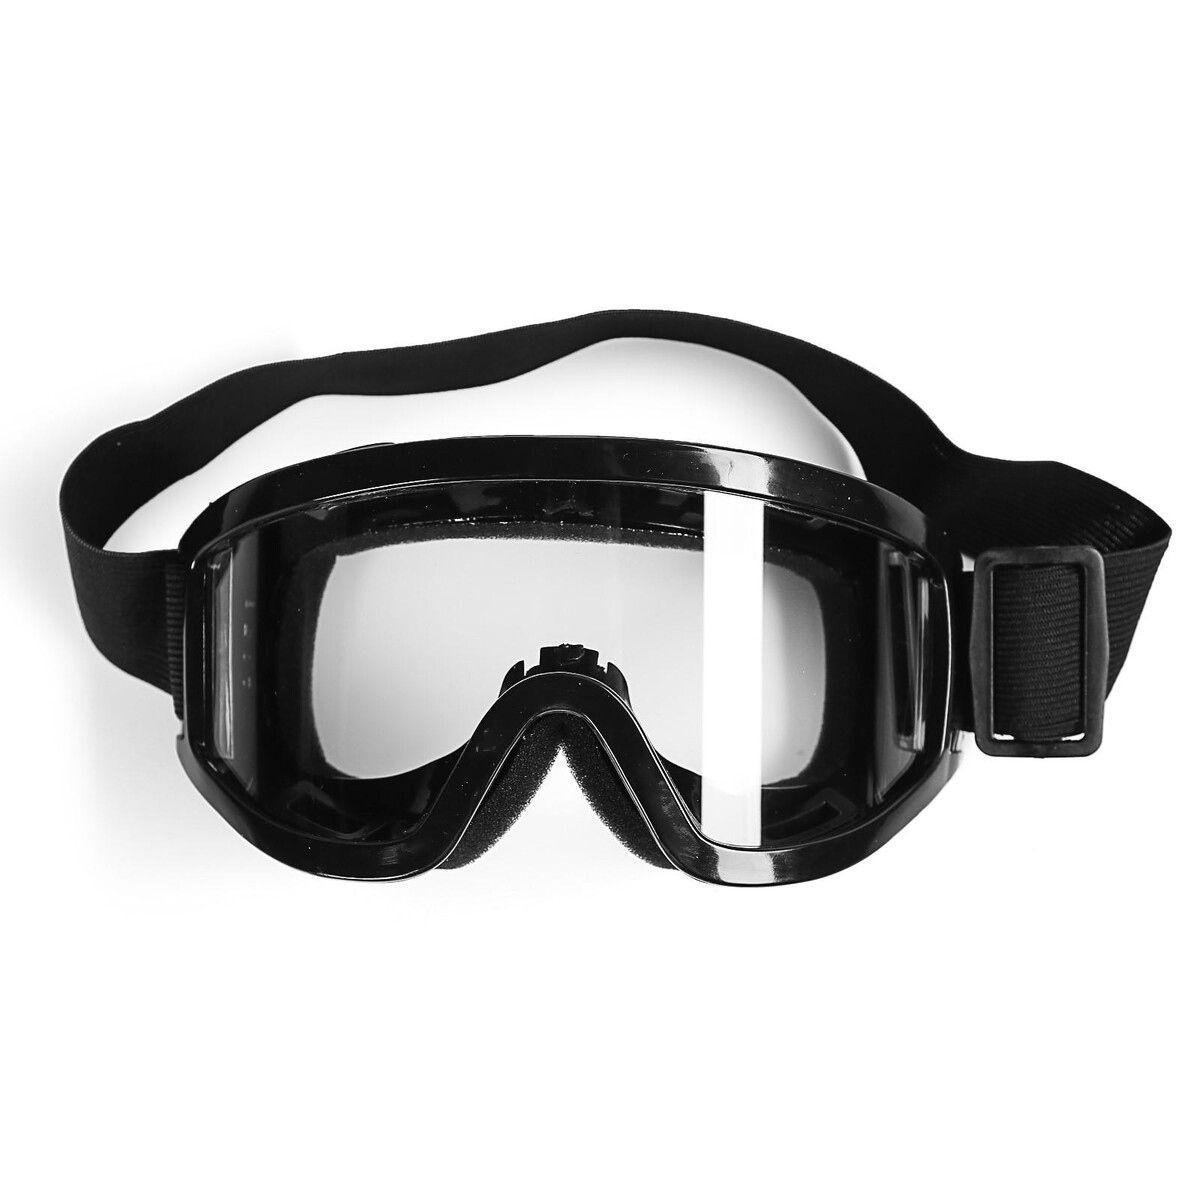 Очки-маска для езды на мототехнике, стекло прозрачное, цвет черный очки маска для езды на мототехнике стекло прозрачное красный ом 21